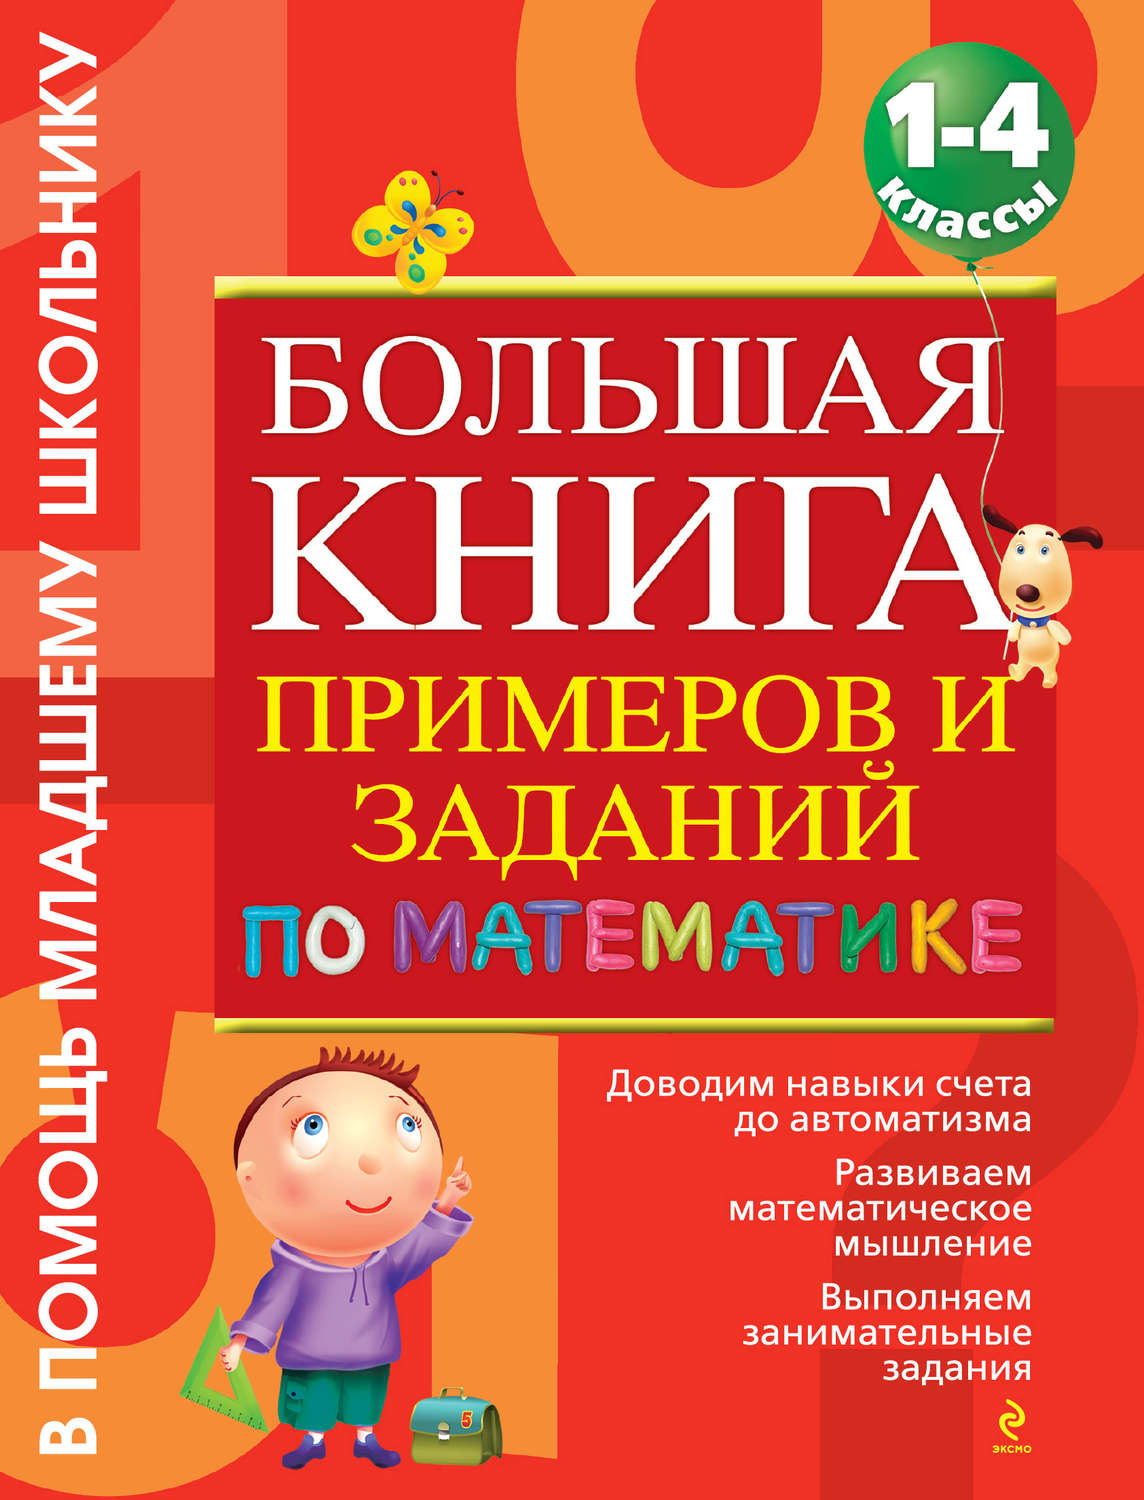 Большая книга примеров по математике васильева скачать